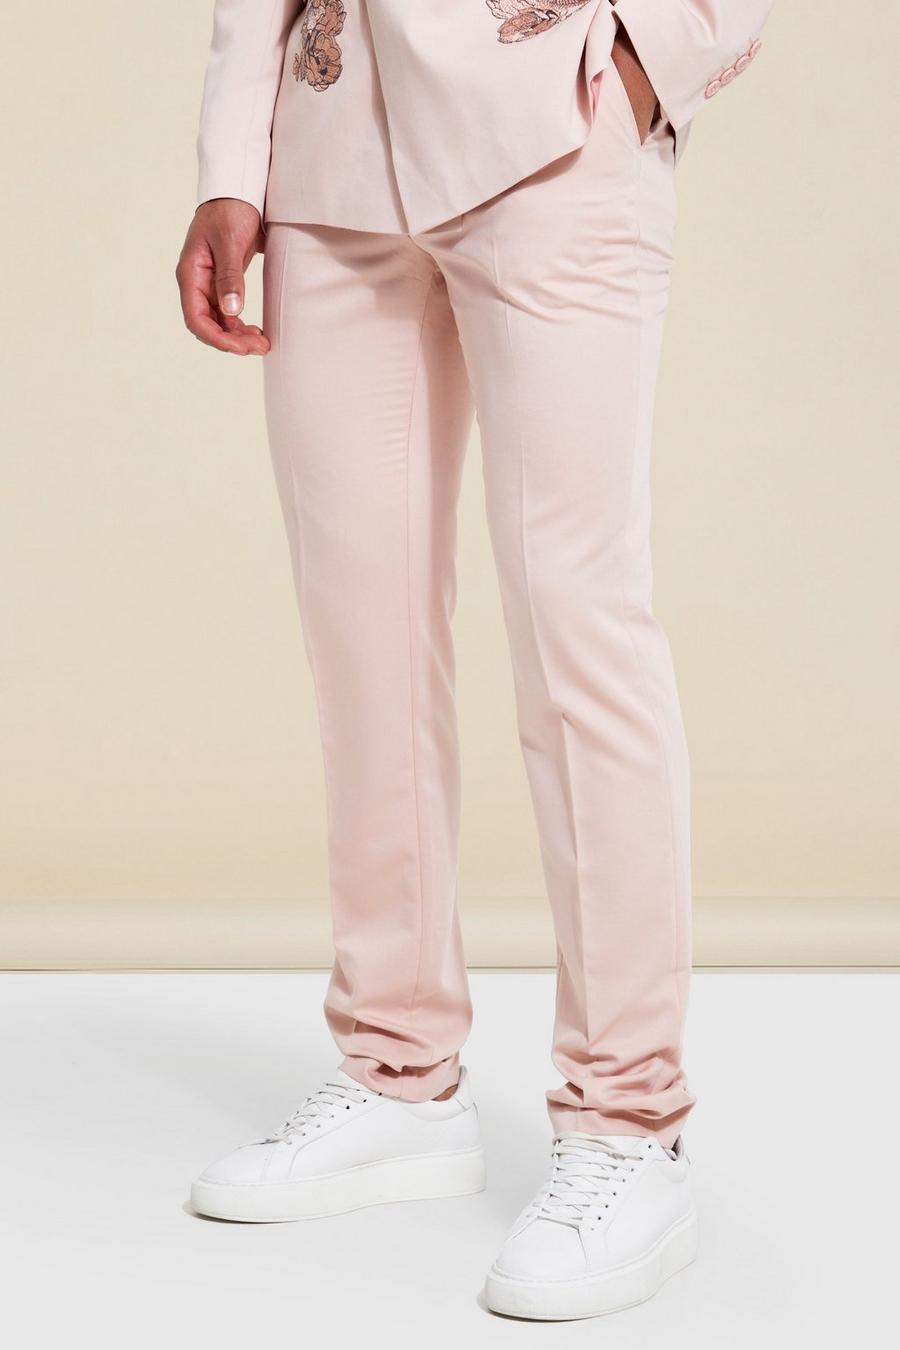 Pink rosa מכנסי חליפה בגזרה צרה עם רקמה פרחונית, לגברים גבוהים